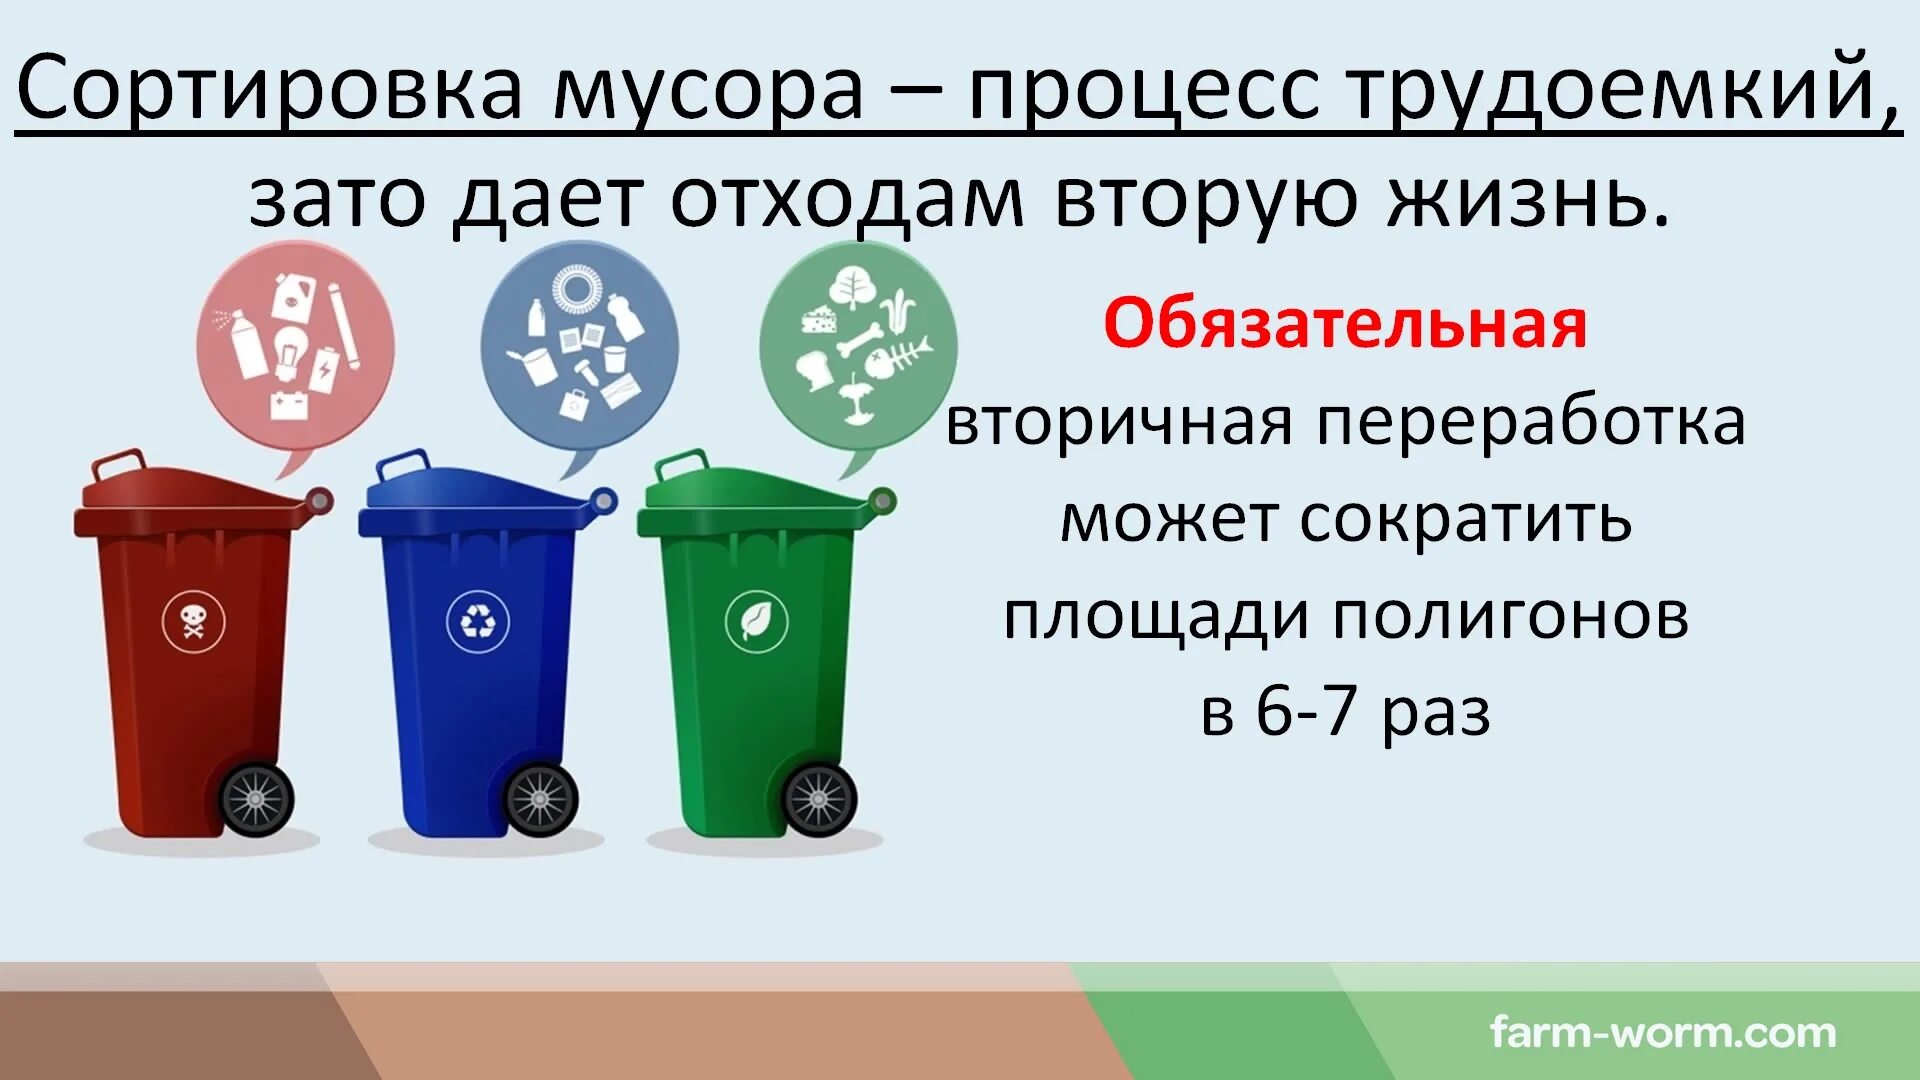 Шины класс отходов. Классификация утилизации отходов. Типы бытовых отходов. Типы мусорных отходов.